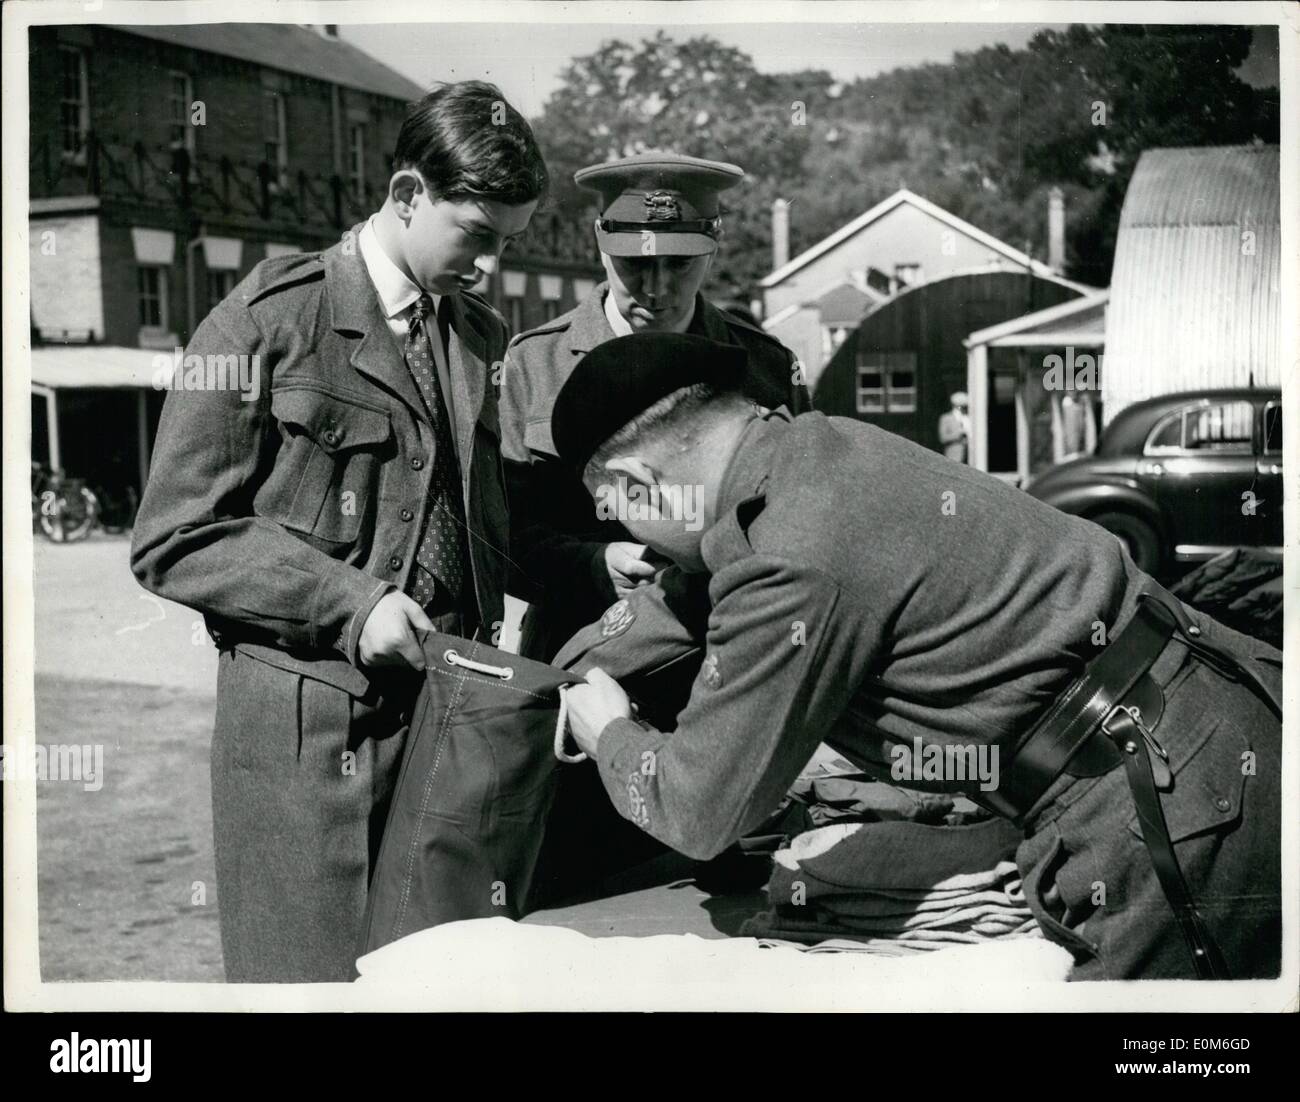 Sept. 09, 1953 - Herzog von Kent tritt Armee. Empfangen von seinem Kit.: H.R.H &gt; der Herzog von Kent kam an diesem Morgen für kitting heraus - an seinem ersten Tag in der Armee in Sandhurst. Fotoshows Major H.A. Havilland zusehen, wie R.Q.N.S. Burton A.C. Kit in den Besitz der Herzog von Kent - in Sandhurst heute kramt bringt. Stockfoto